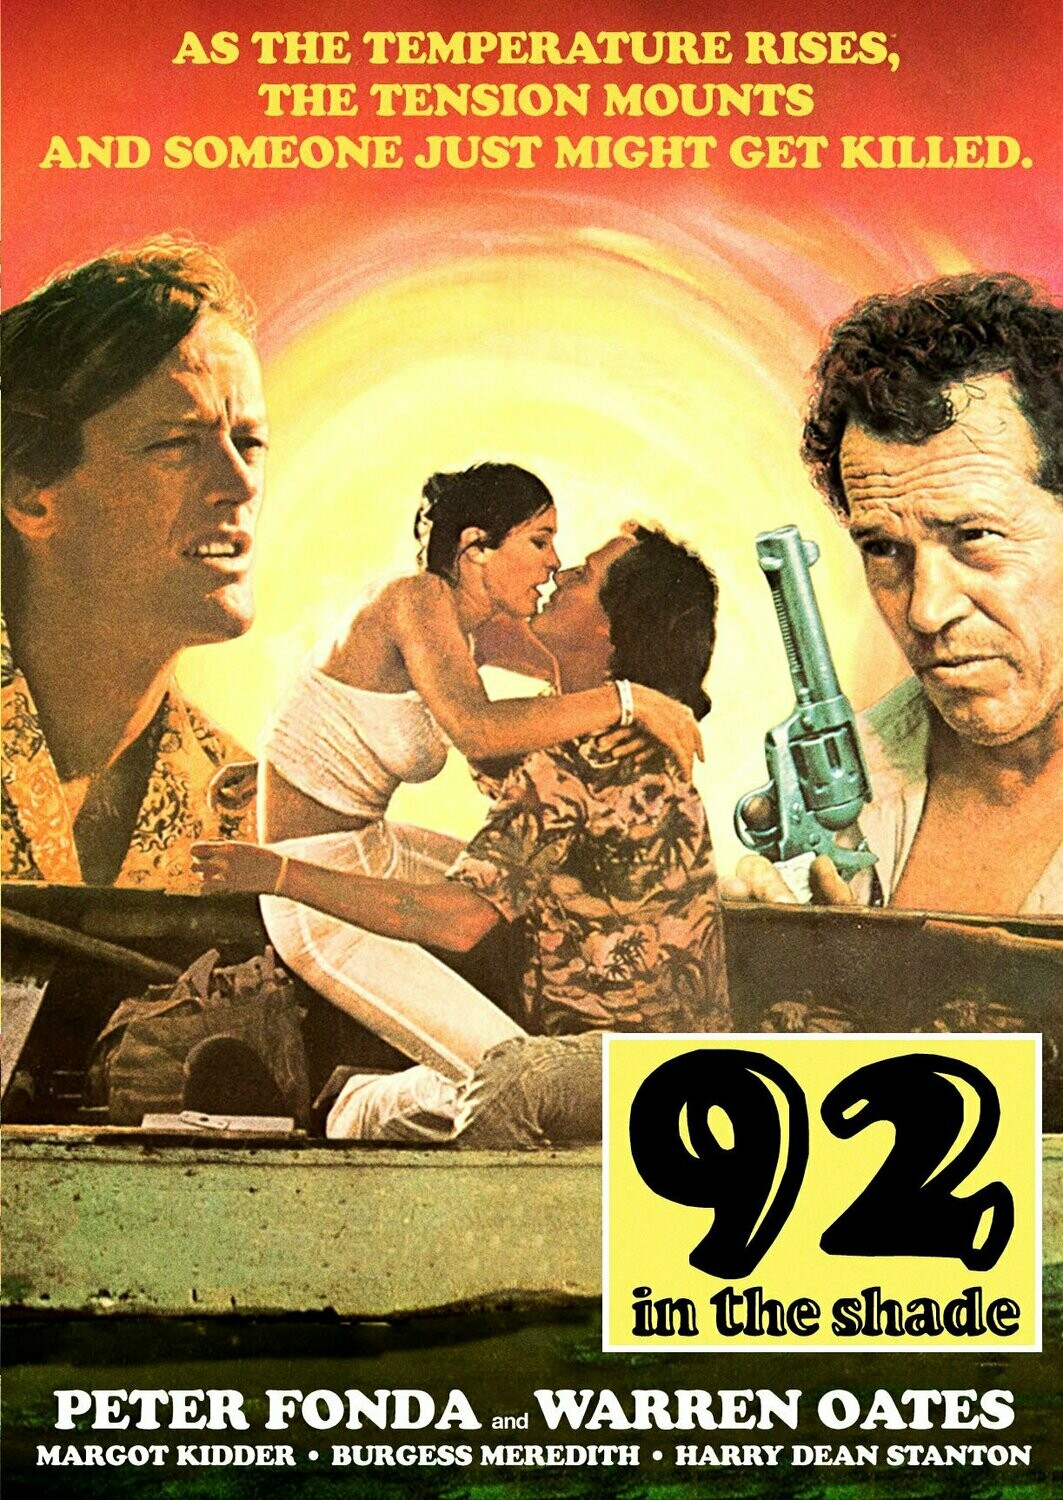 92 In The Shade DVD (1975) - Peter Fonda, Warren Oates, Margot Kidder, Burgess Meredith, Joe Spinell